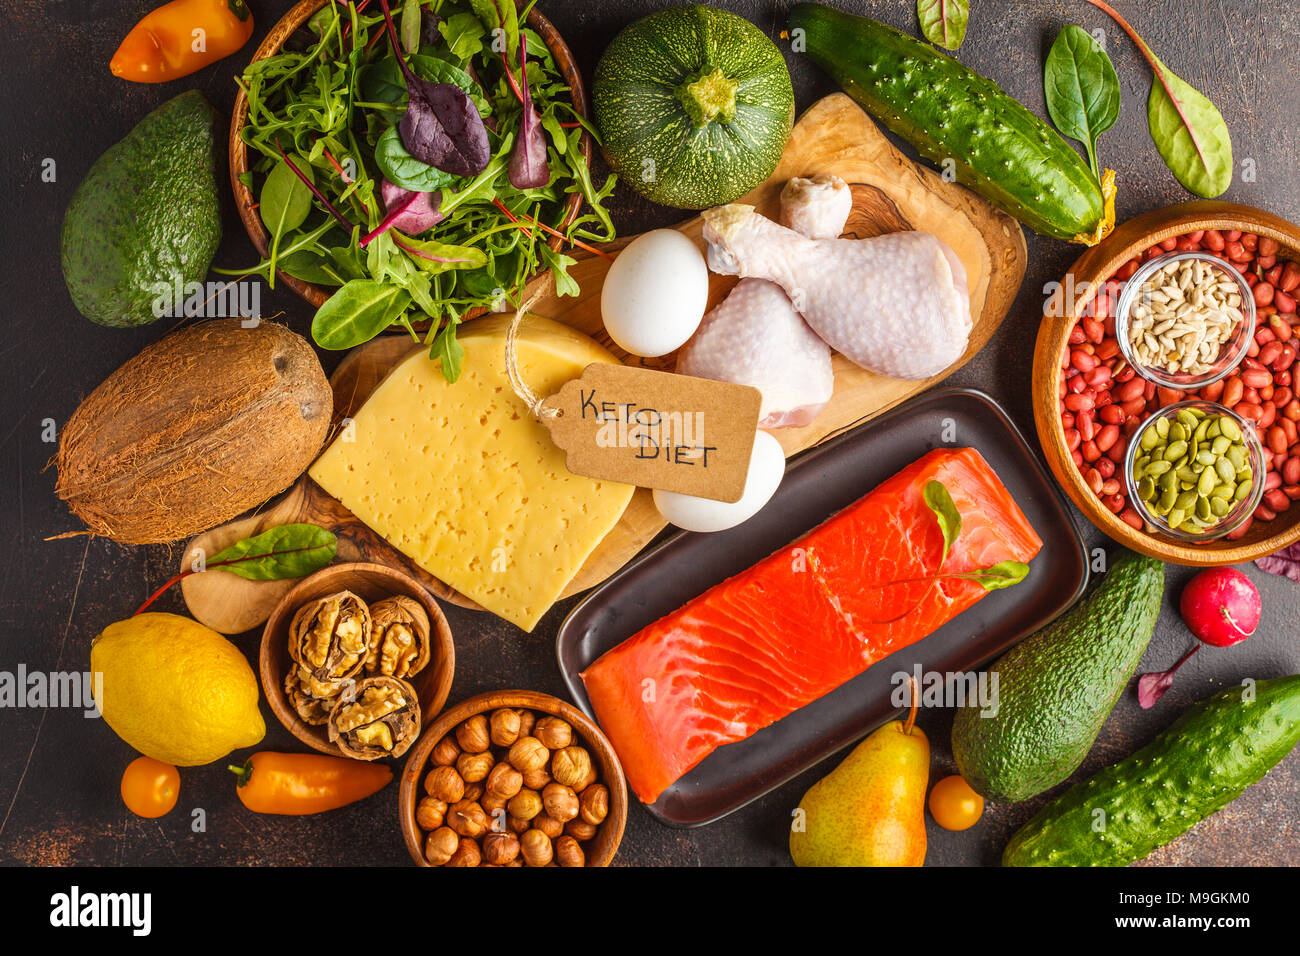 Keto Diät Konzept. Low-carb essen Hintergrund. Gemüse, Fisch, Fleisch, Käse, Nüsse auf einem dunklen Hintergrund. Stockfoto